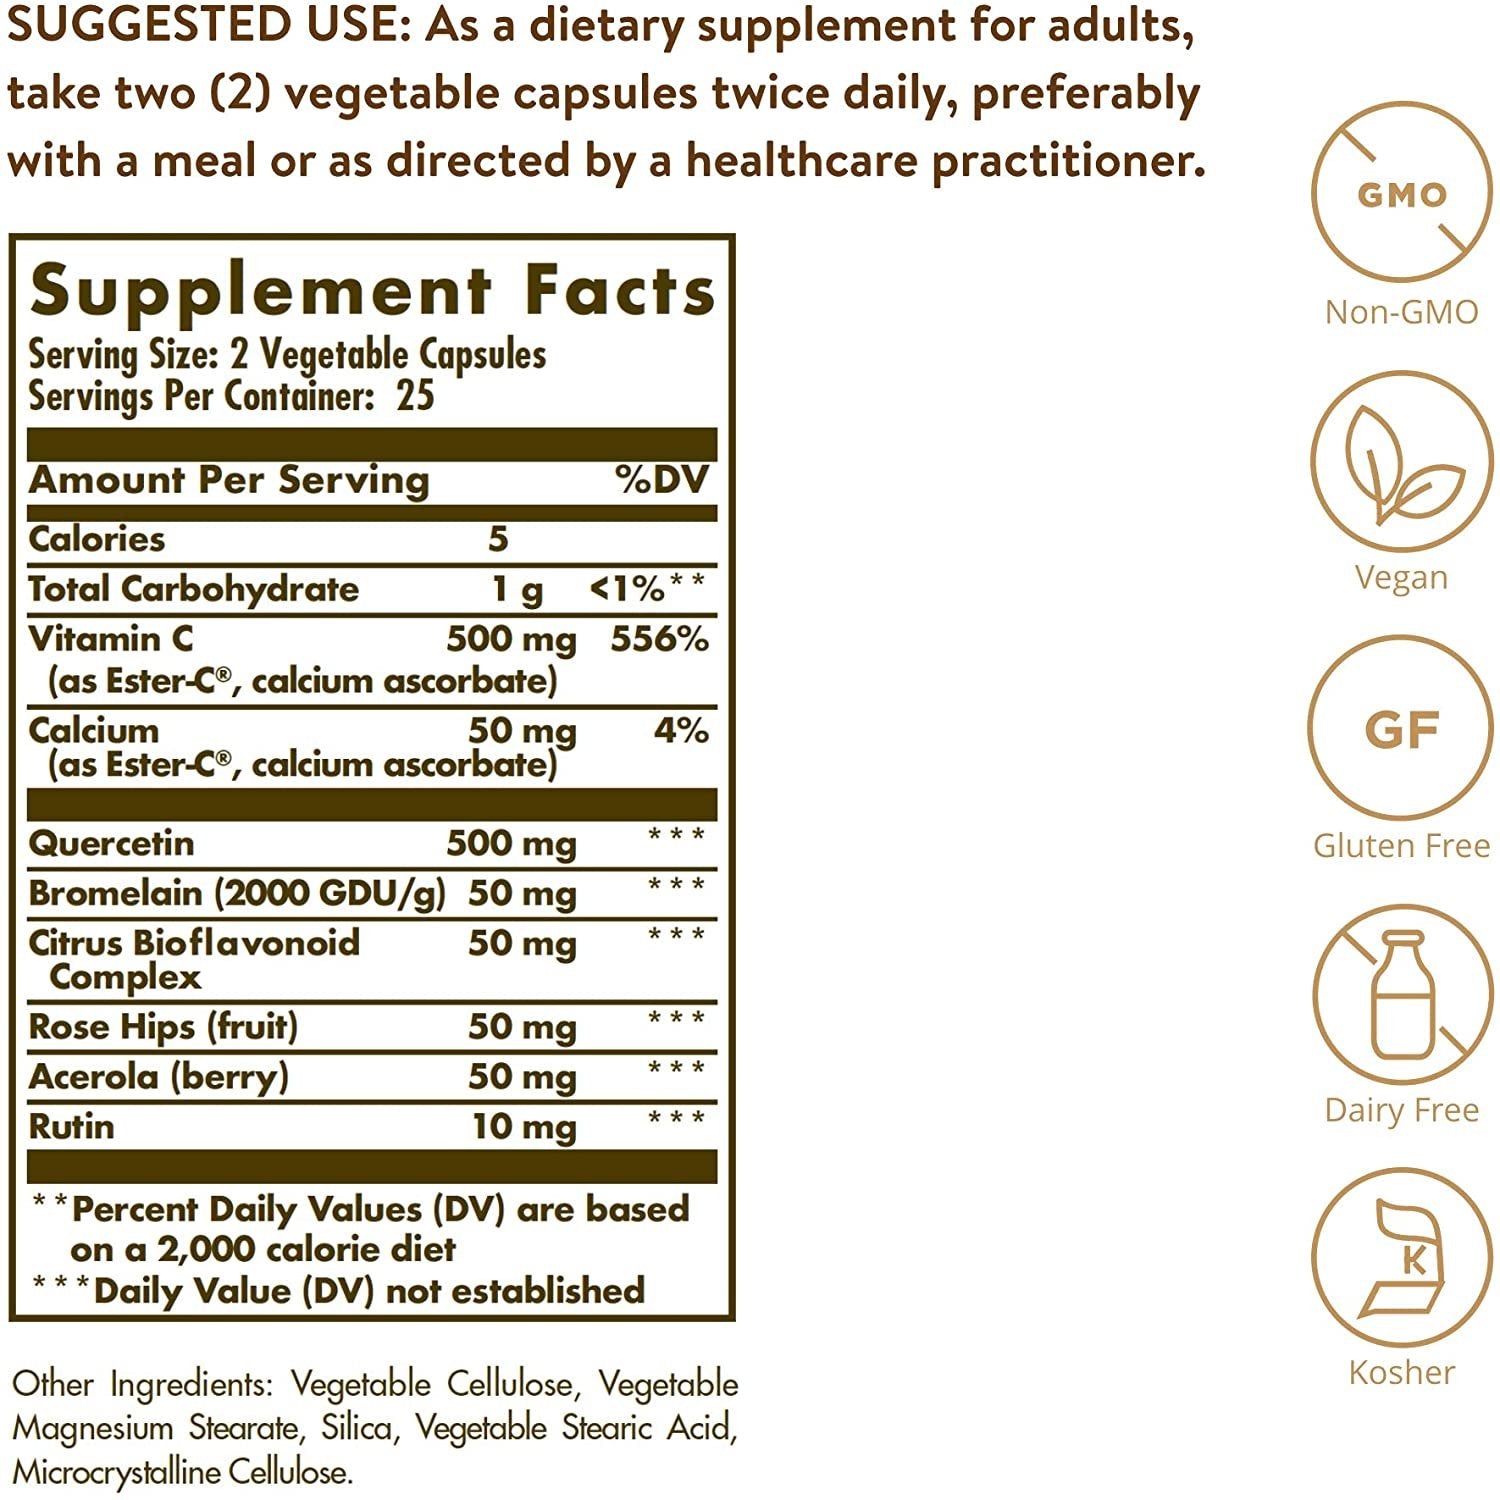 Solgar – Quercetin Complex with Ester-C Plus, 50 Vegetable Capsules